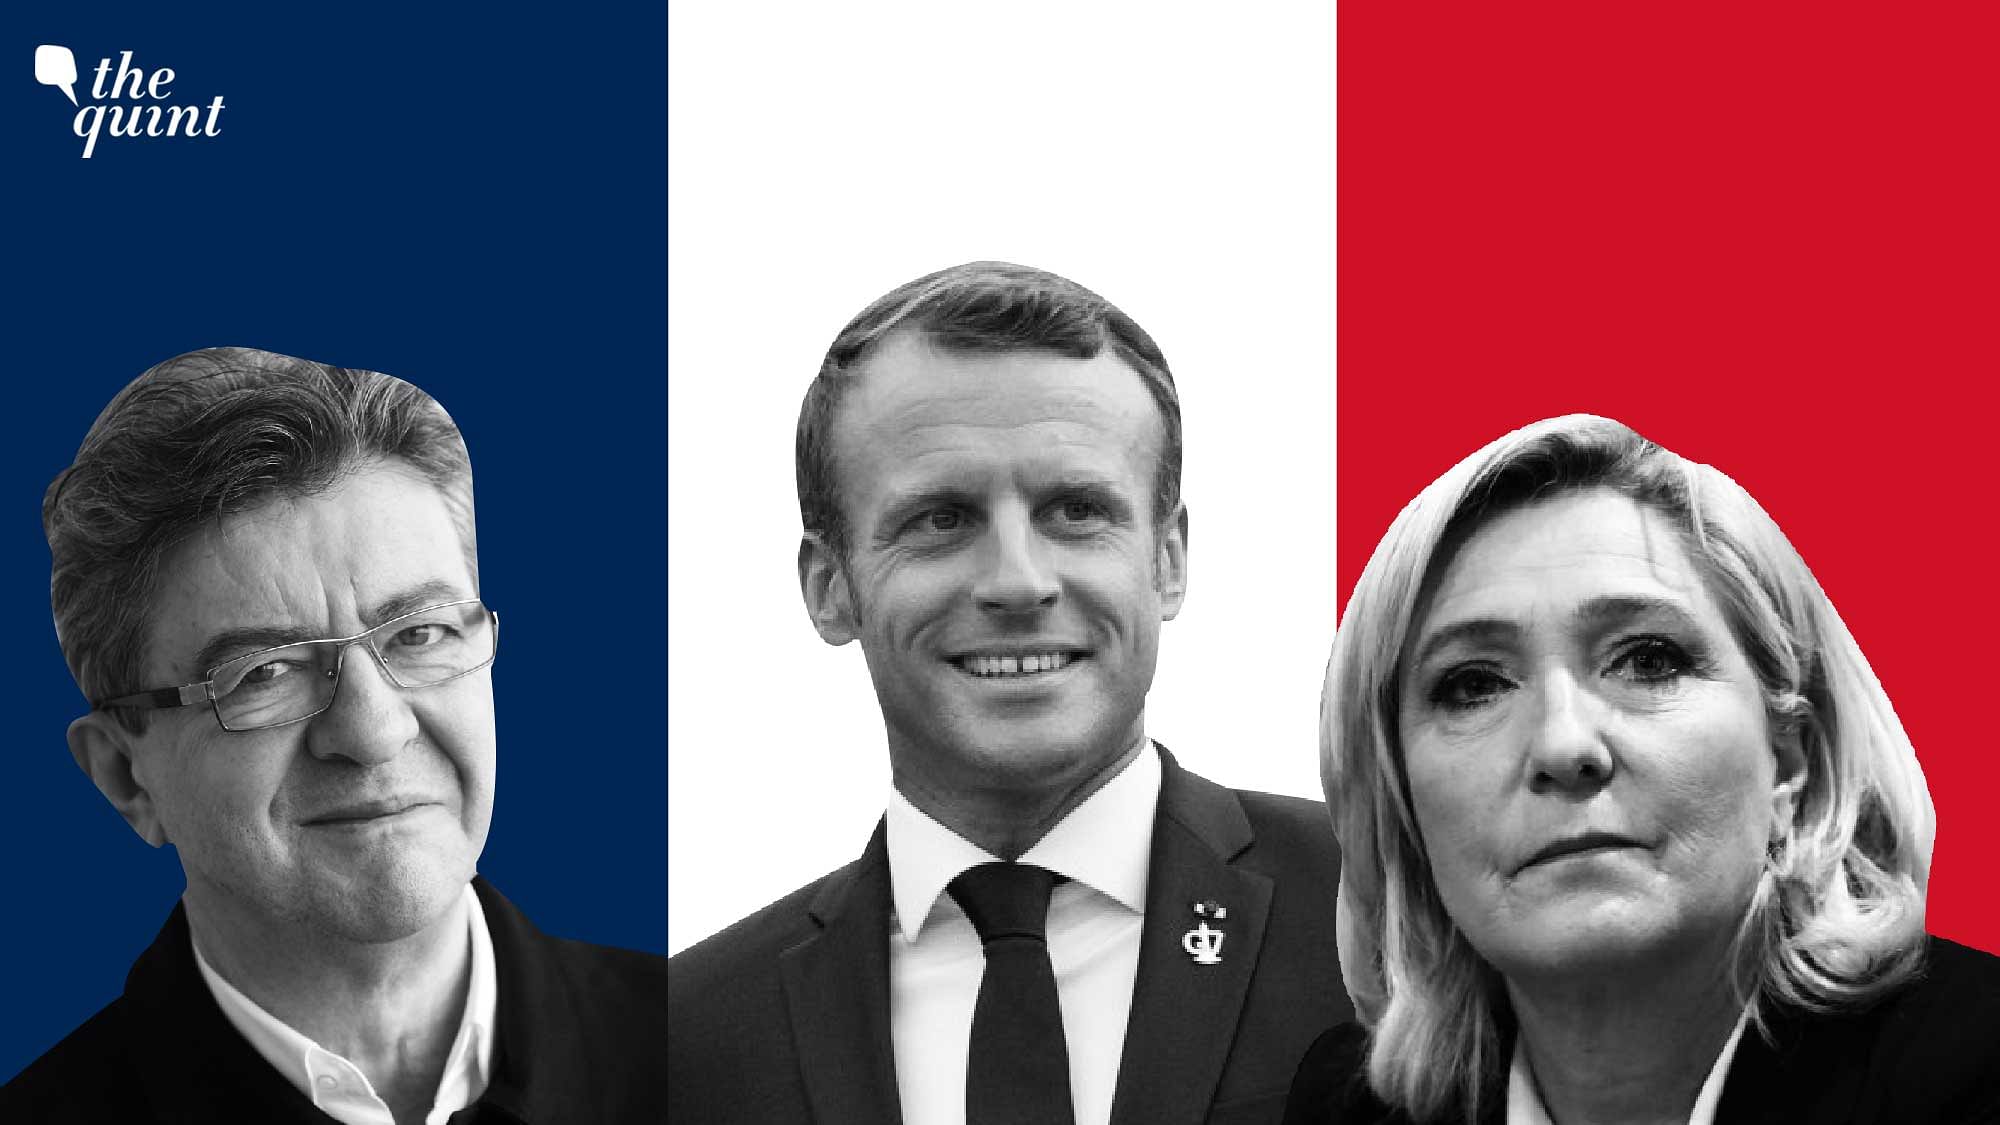 <div class="paragraphs"><p>Jean-Luc Mélenchon (left), Emmanuel Macron, and&nbsp;Marine Le Pen.</p></div>